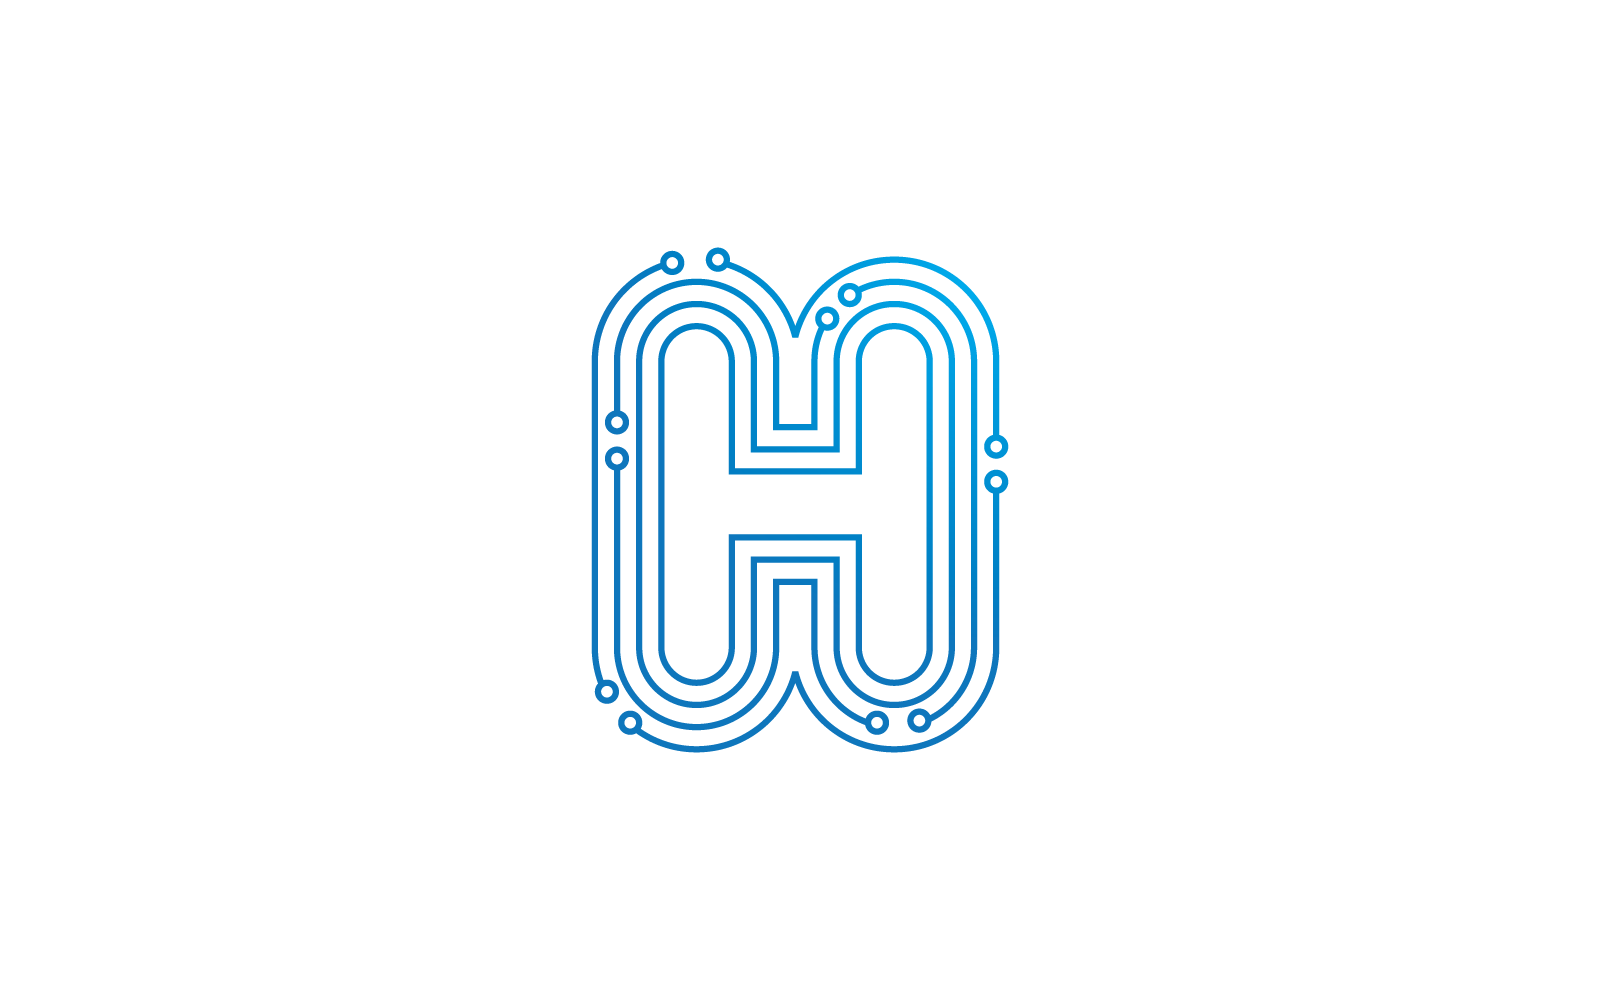 H початкової букви схеми технології ілюстрація логотип вектор шаблон